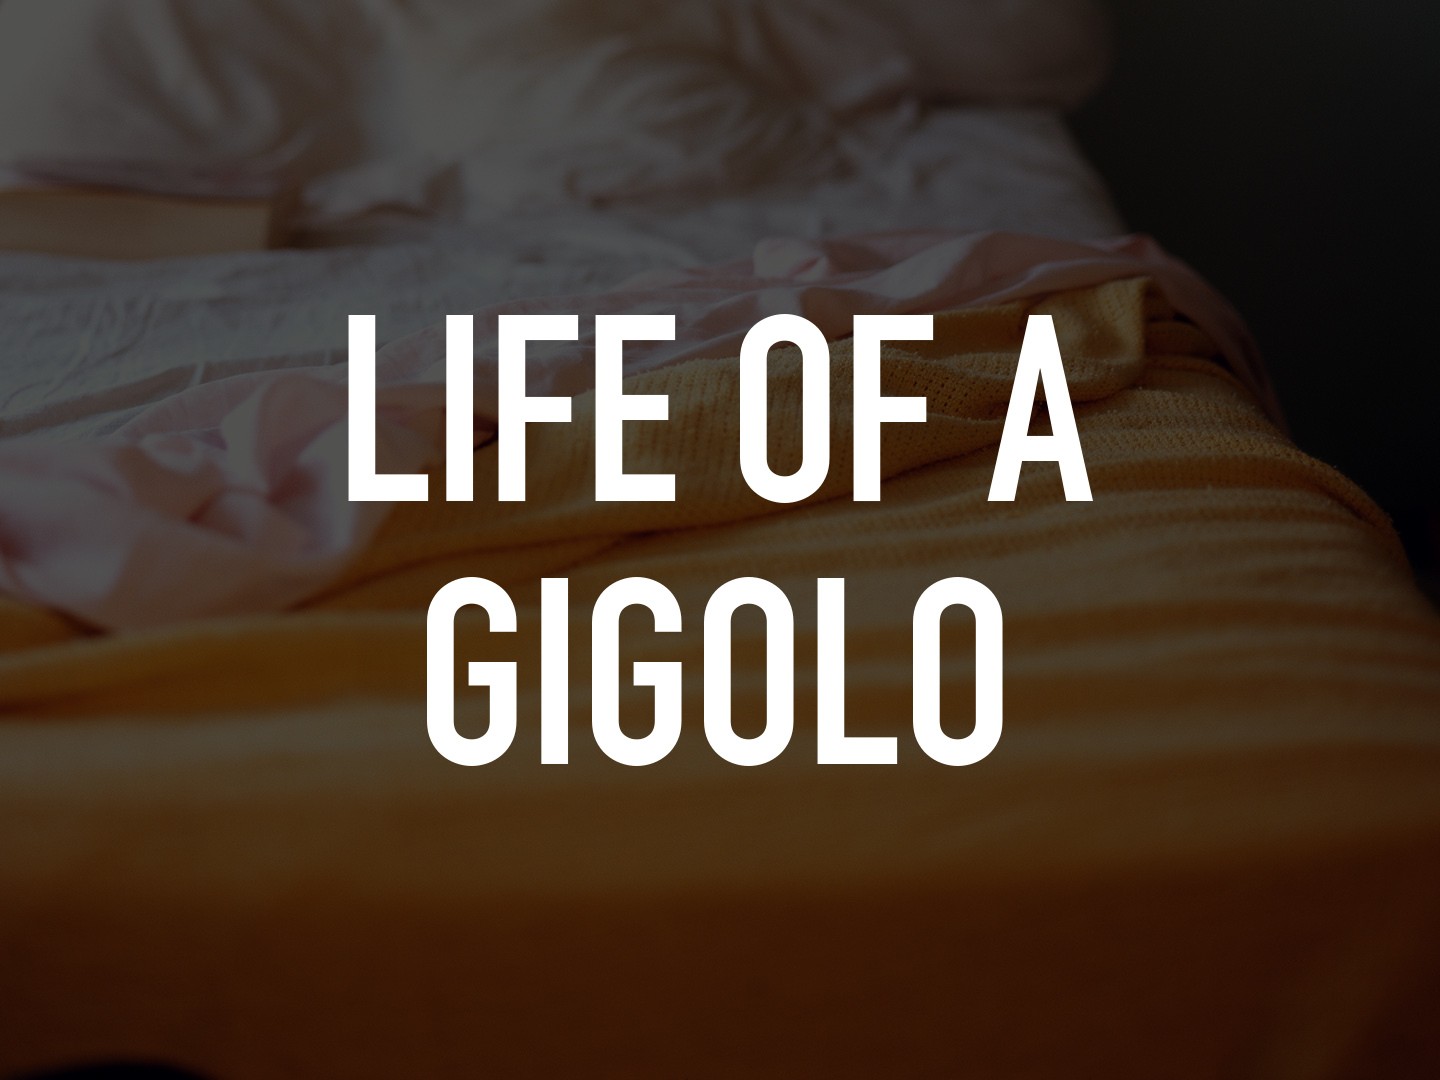 cheryl cone share life of gigolo movie photos